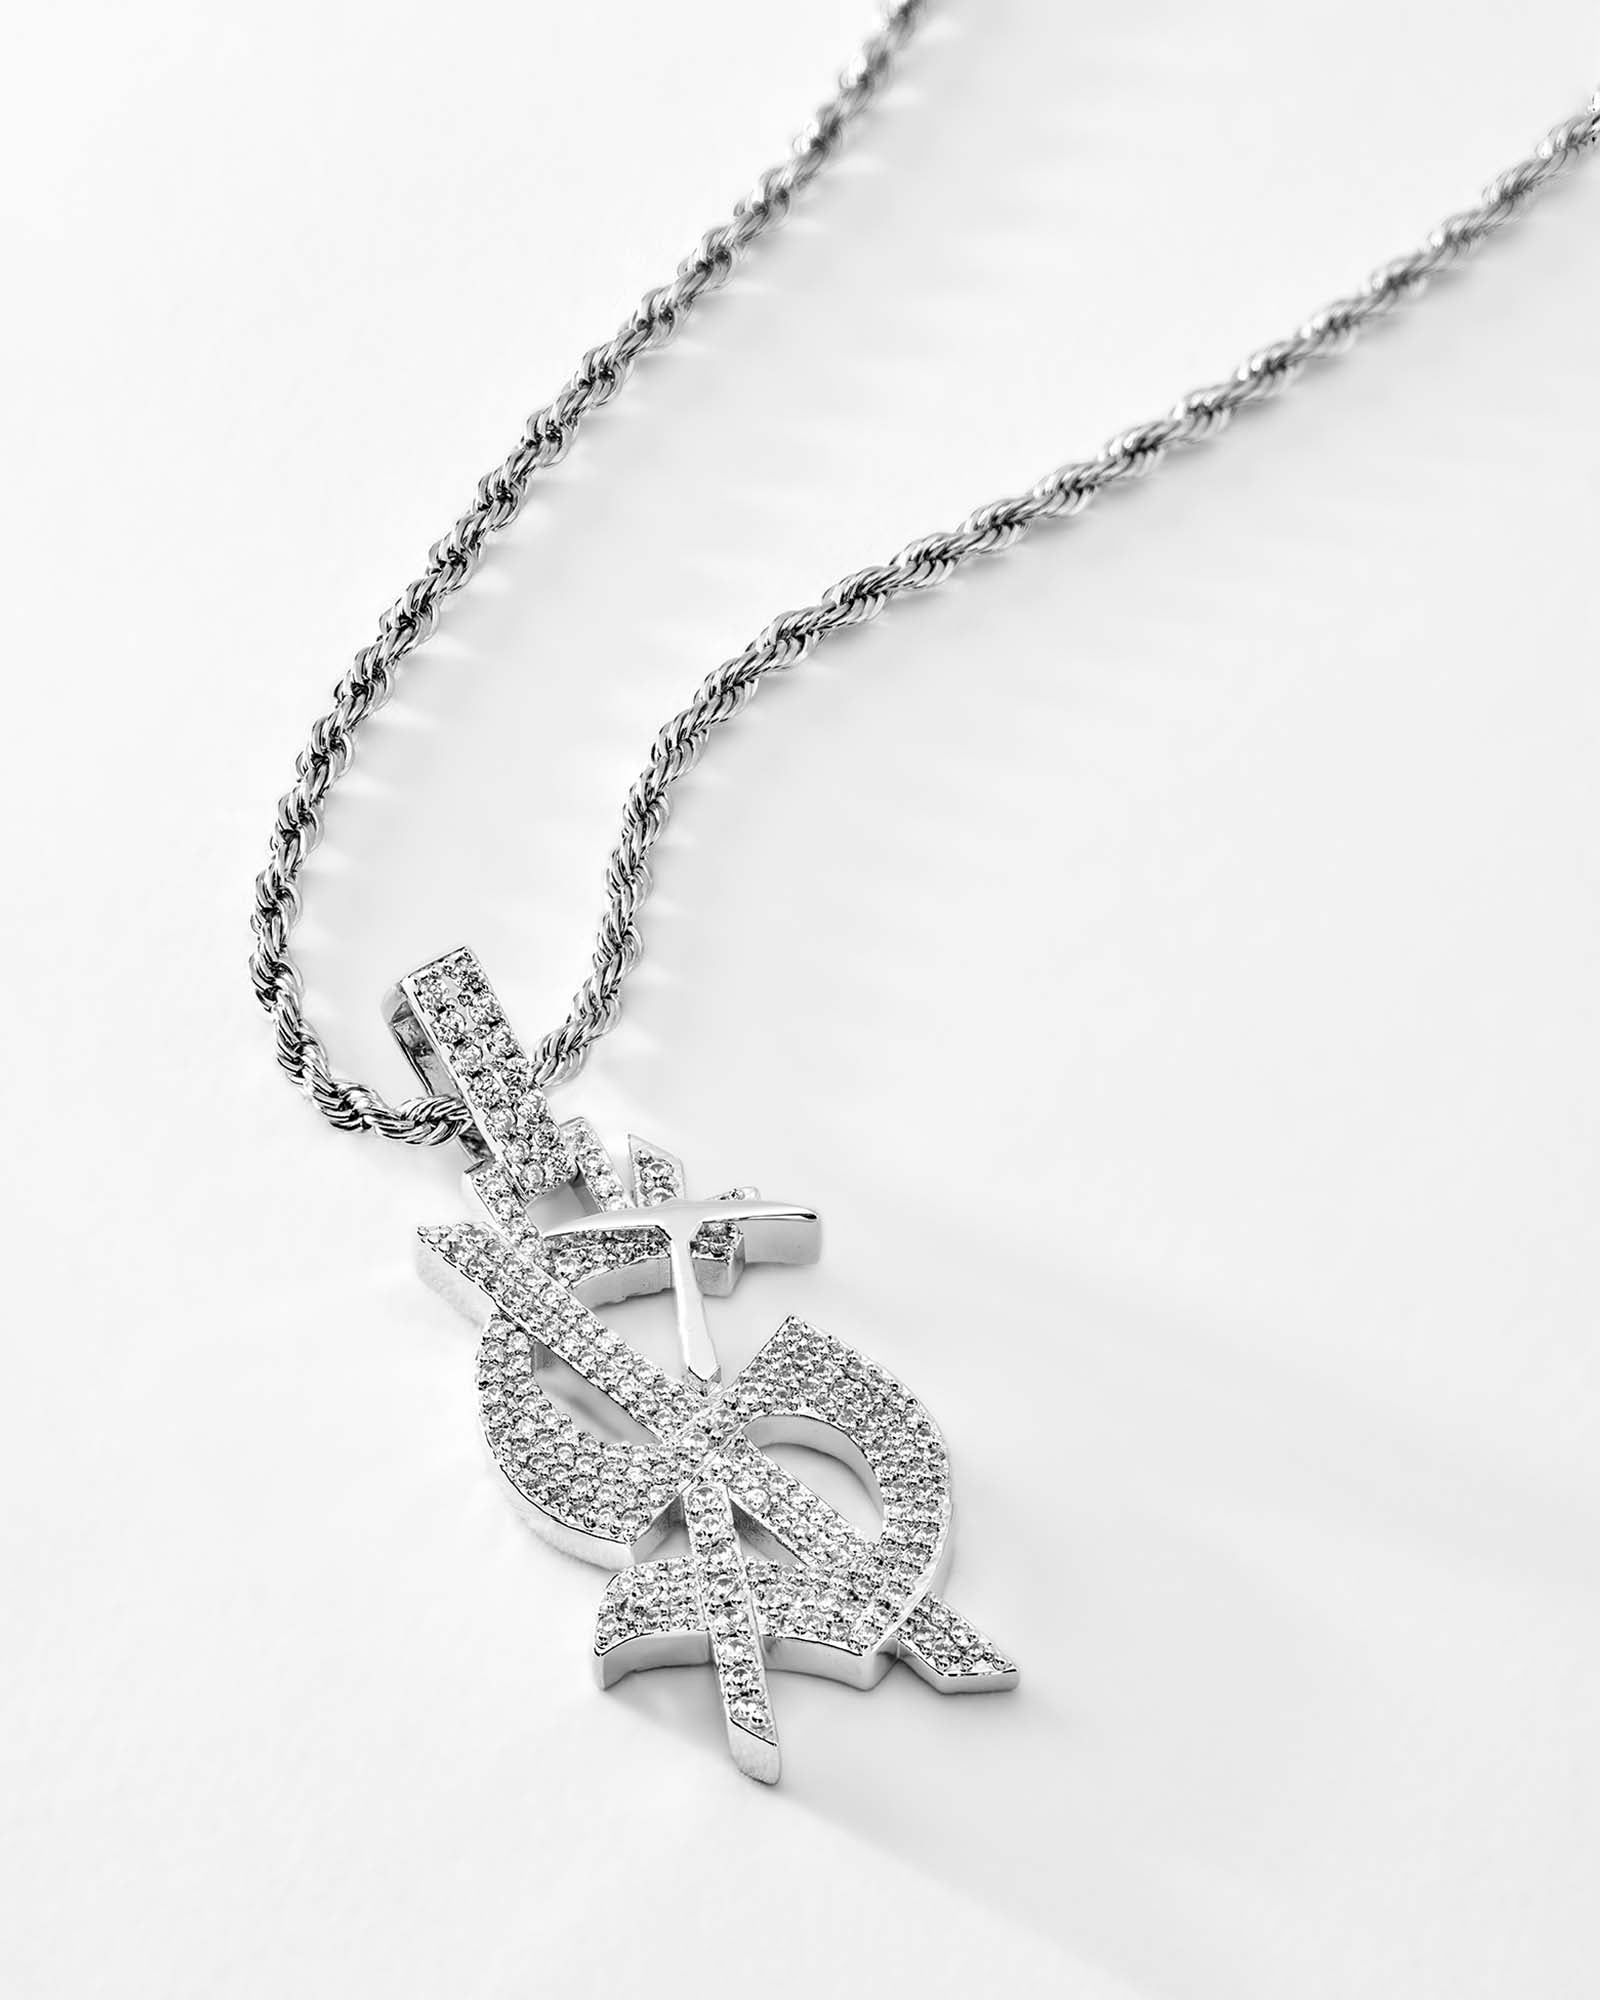 Louis Vuitton, Jewelry, Louis Vuitton Monogram Party Necklace S0